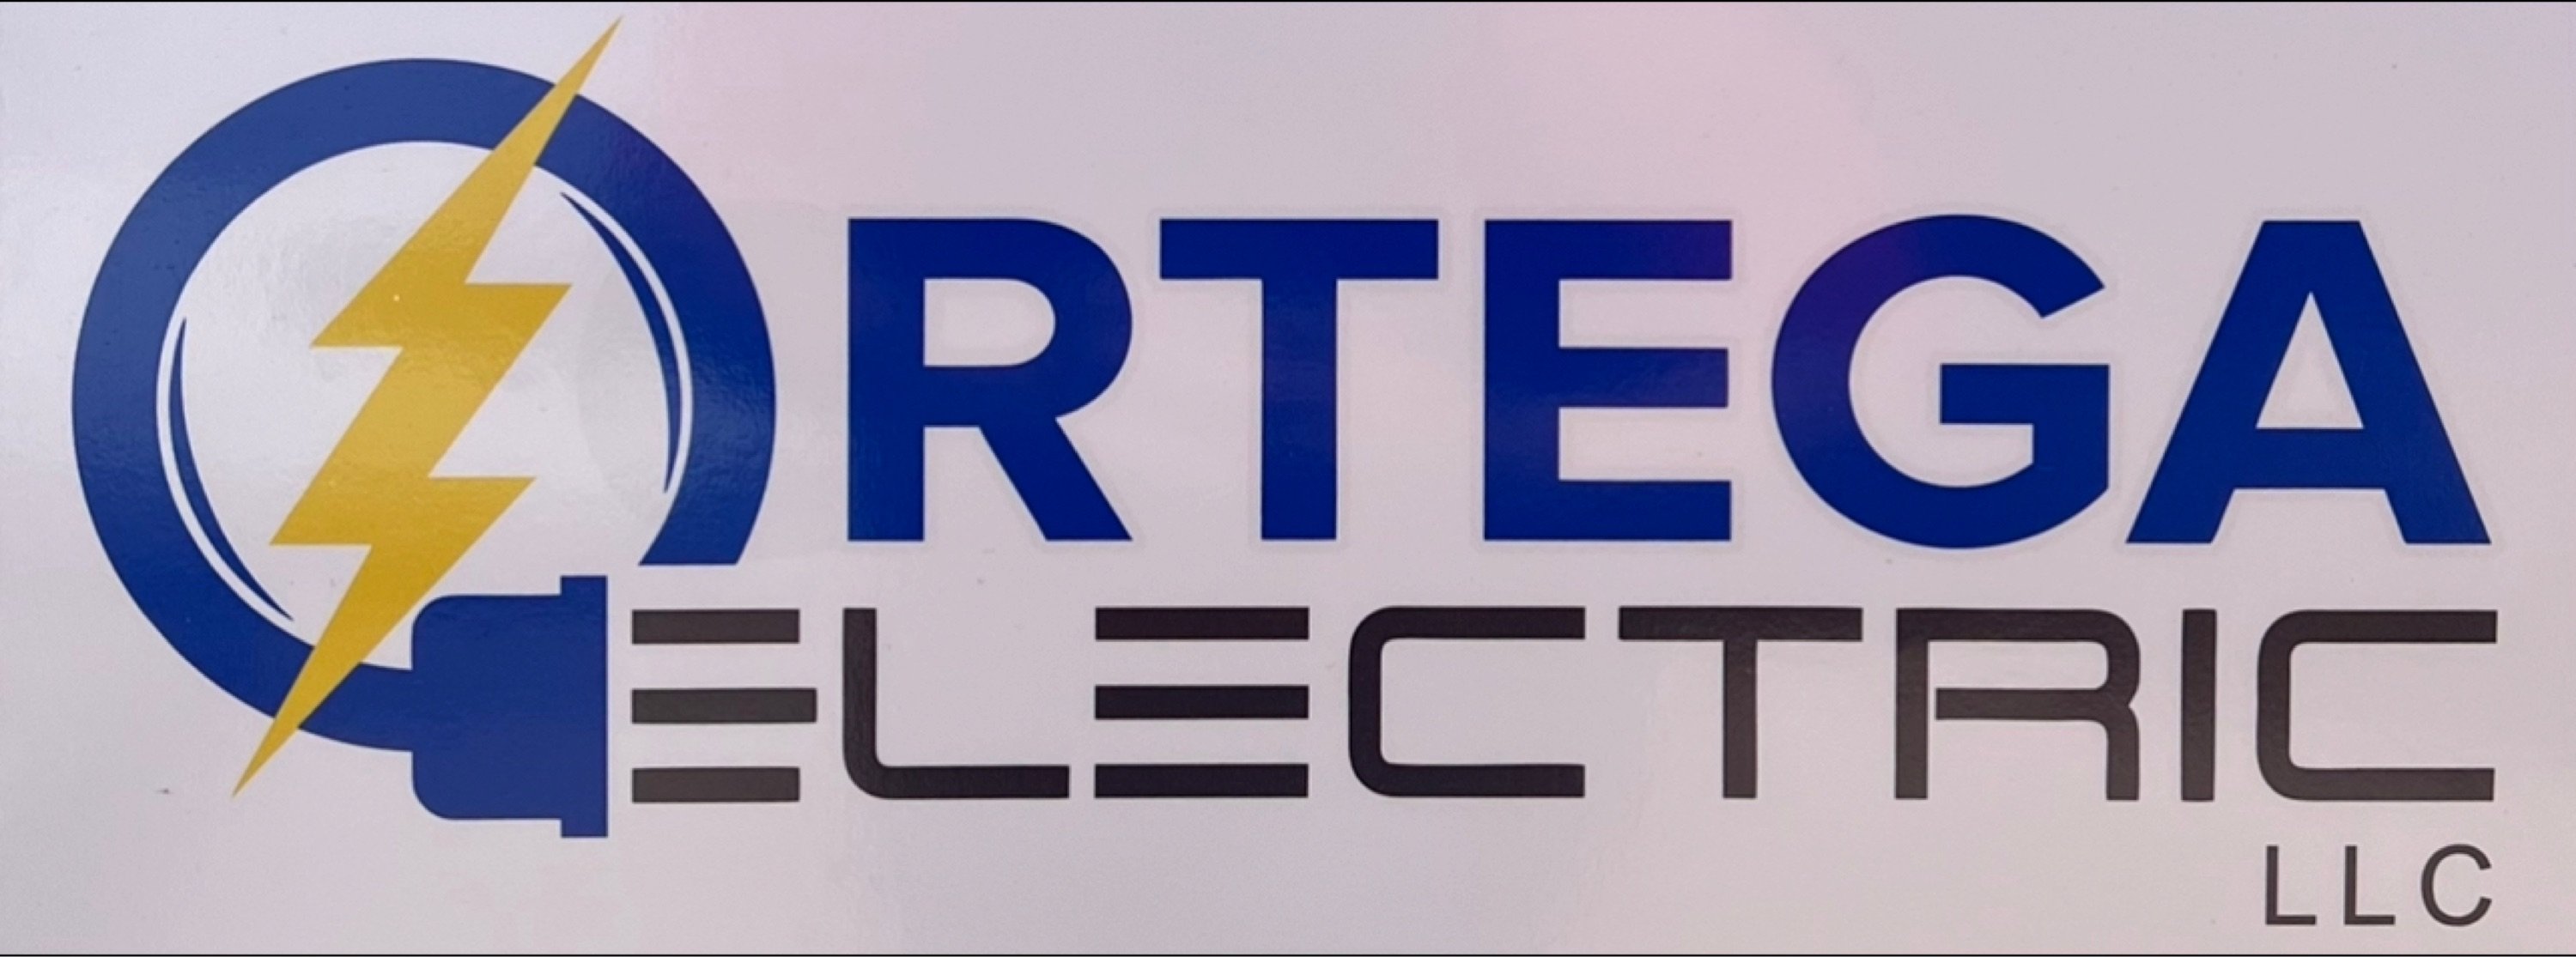 Ortega Electric LLC Logo